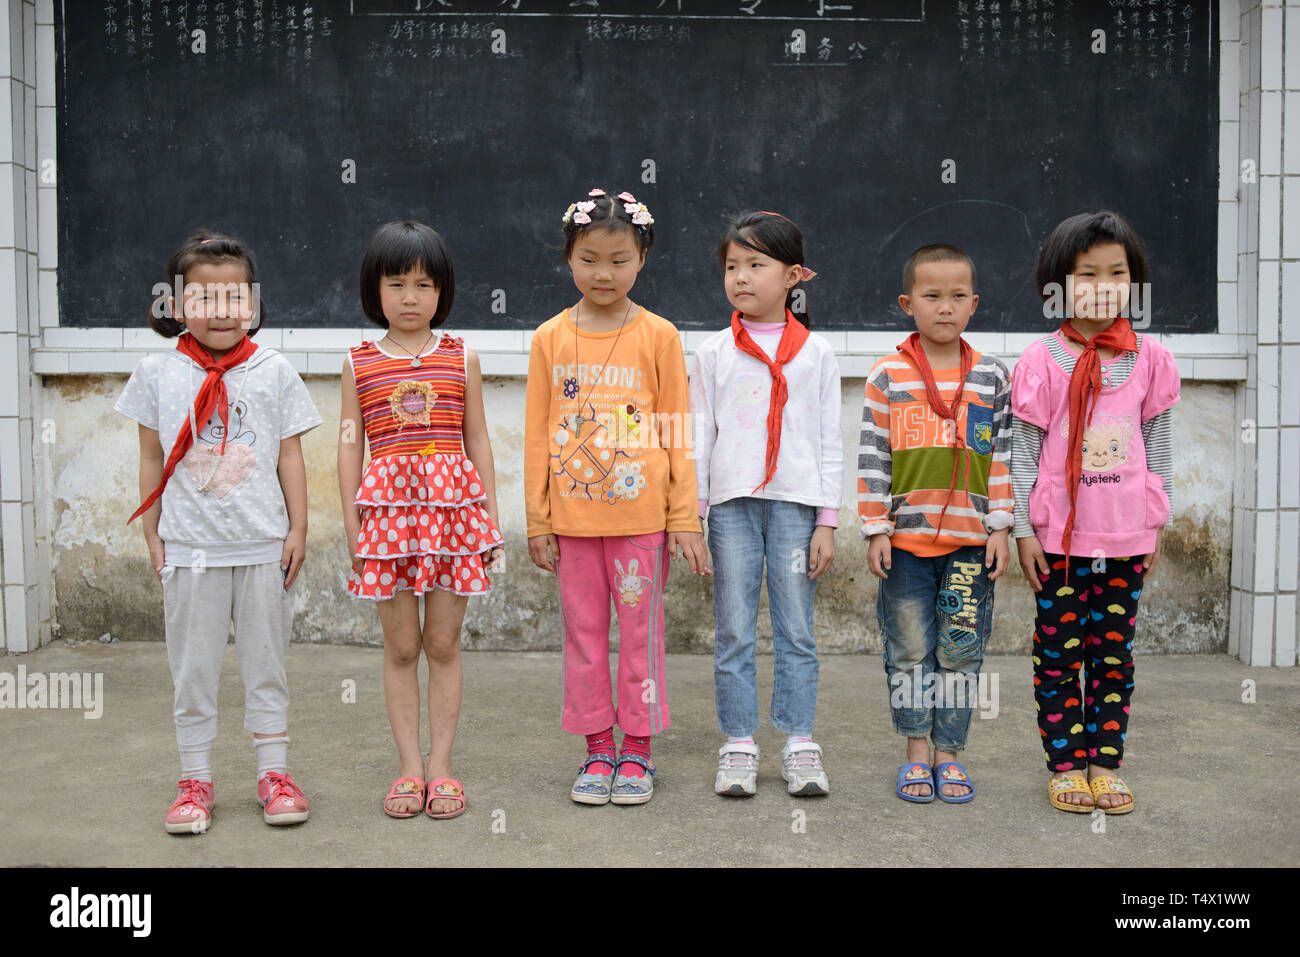 L'âge des enfants de l'école primaire s'alignent pour une photo dans la cour de l'école en milieu rural de la région de Guangxi, dans le sud de la Chine centrale. Banque D'Images